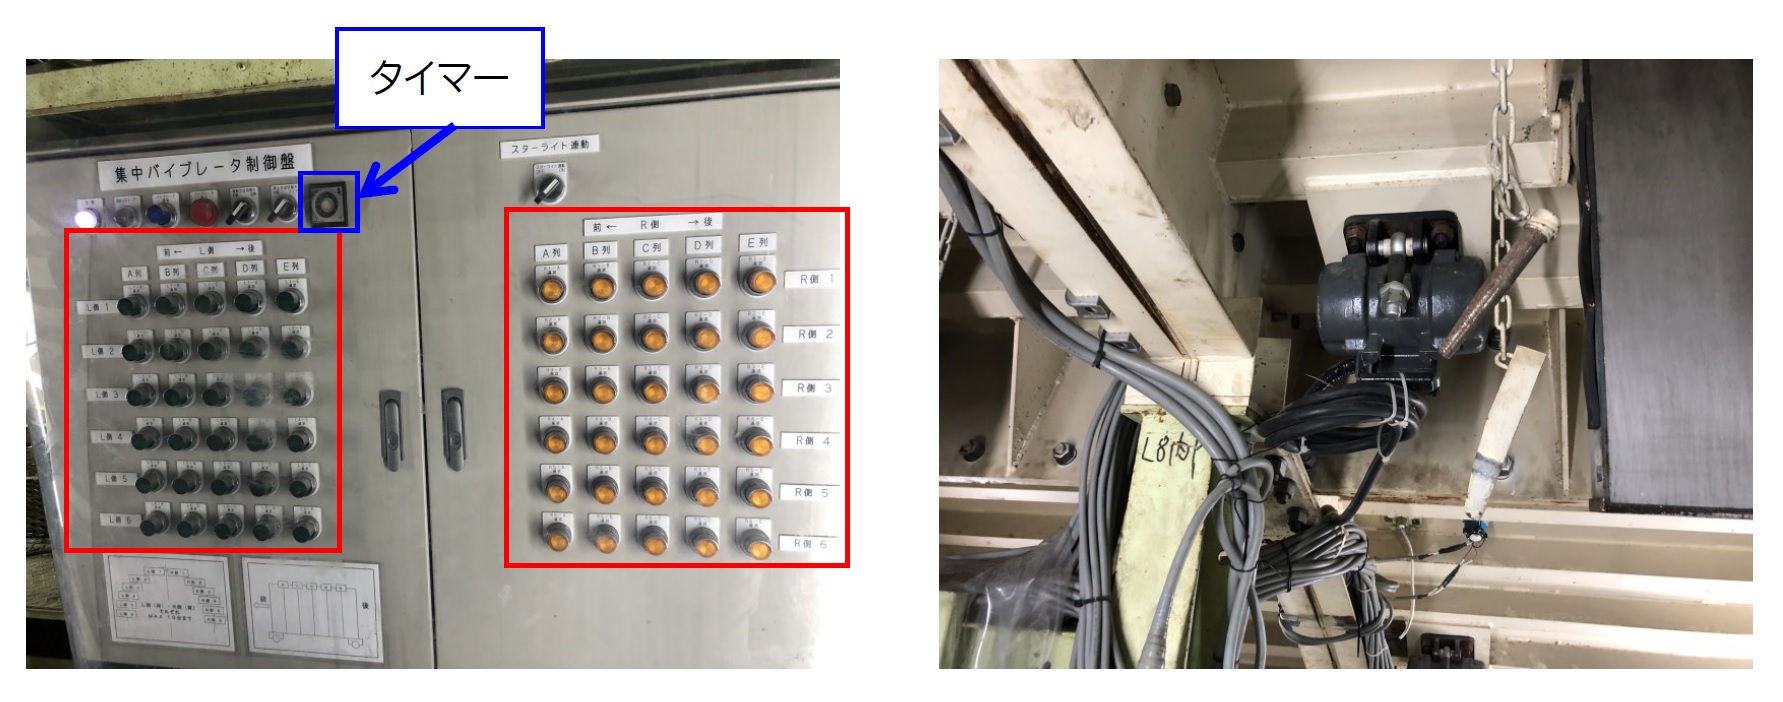 型枠バイブレータ集中制御システムⅡ（左）と型枠バイブレータ装備状況（右）